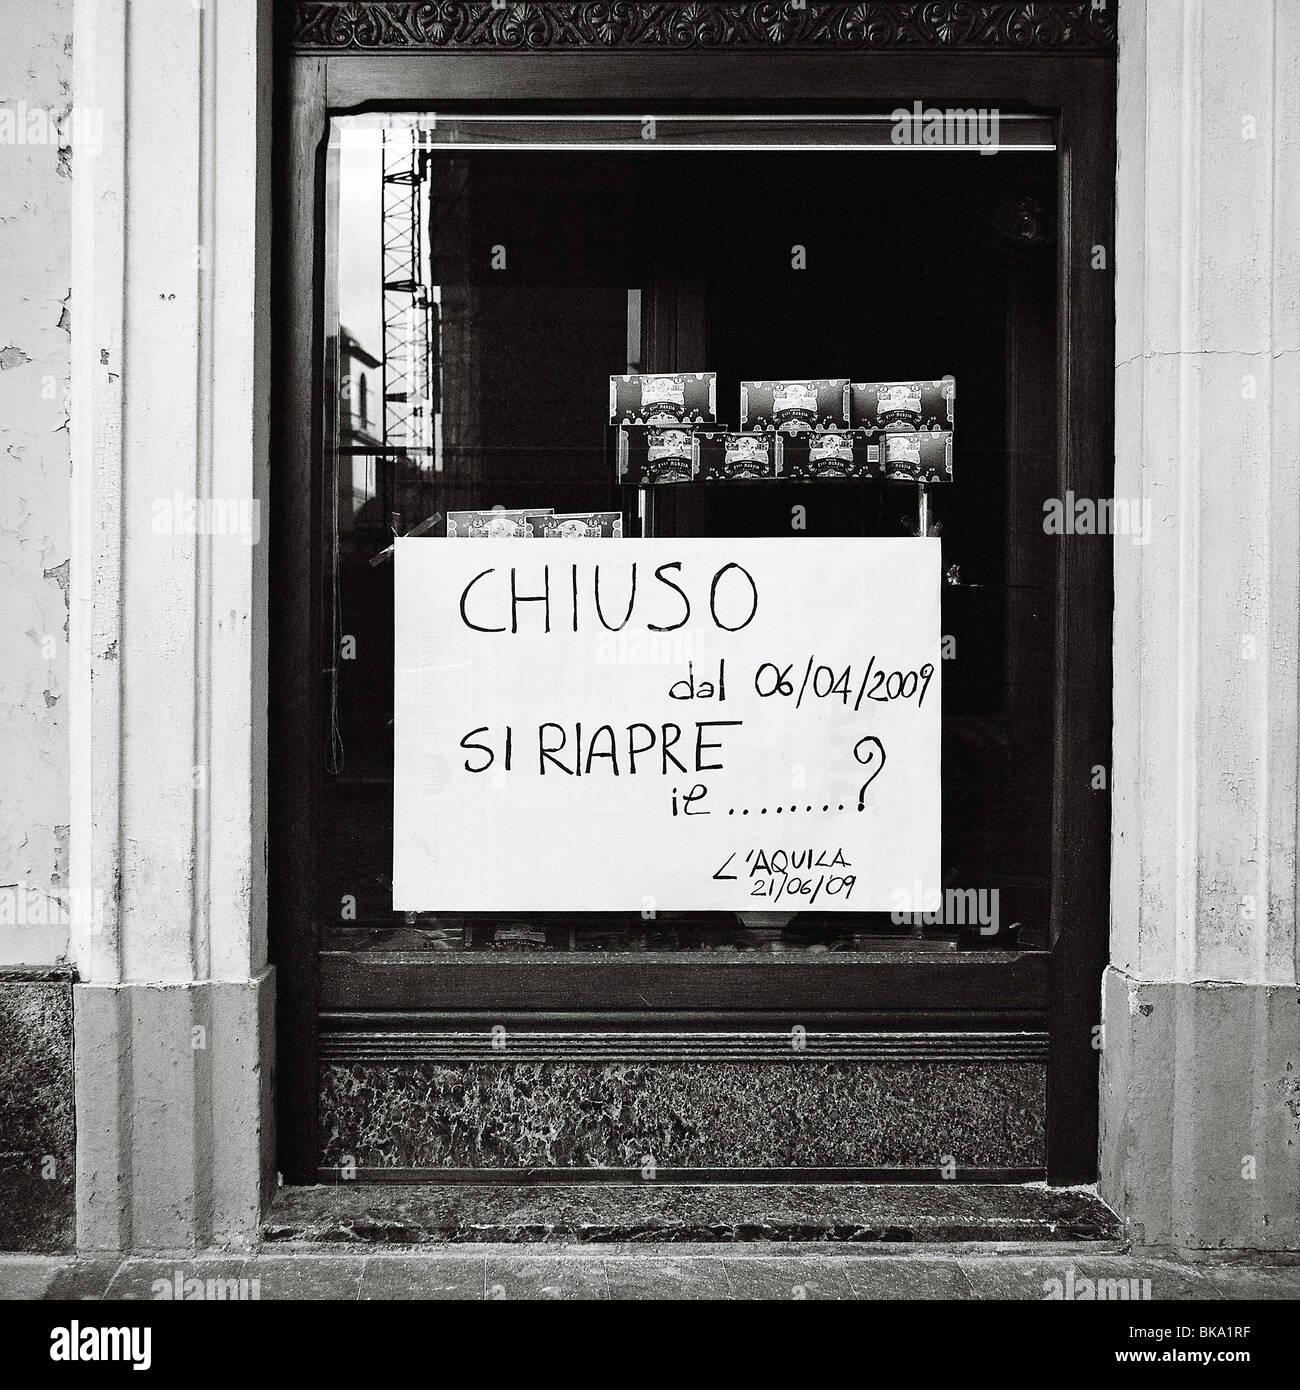 Un segno in un negozio chiuso da il terremoto del 2009 a l'Aquila, Italia Foto Stock